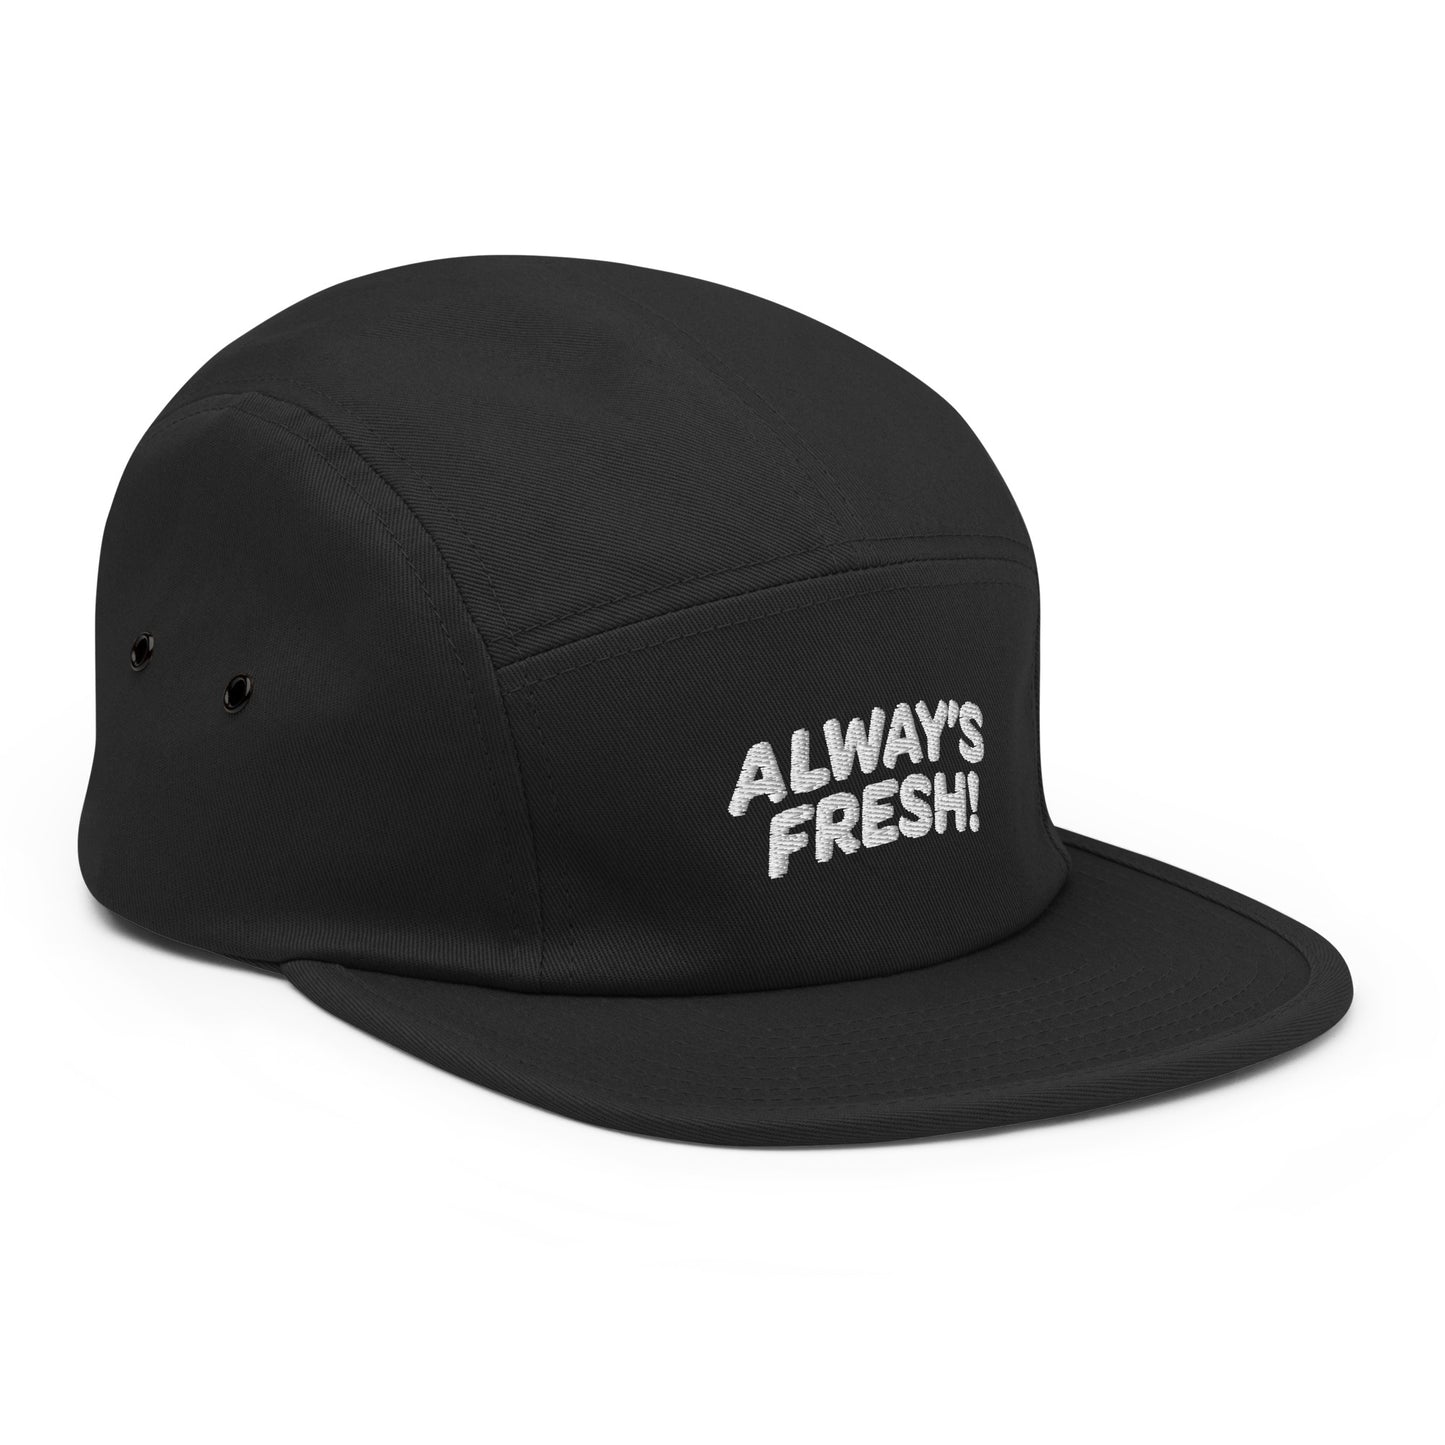 Alway's Fresh! Cap